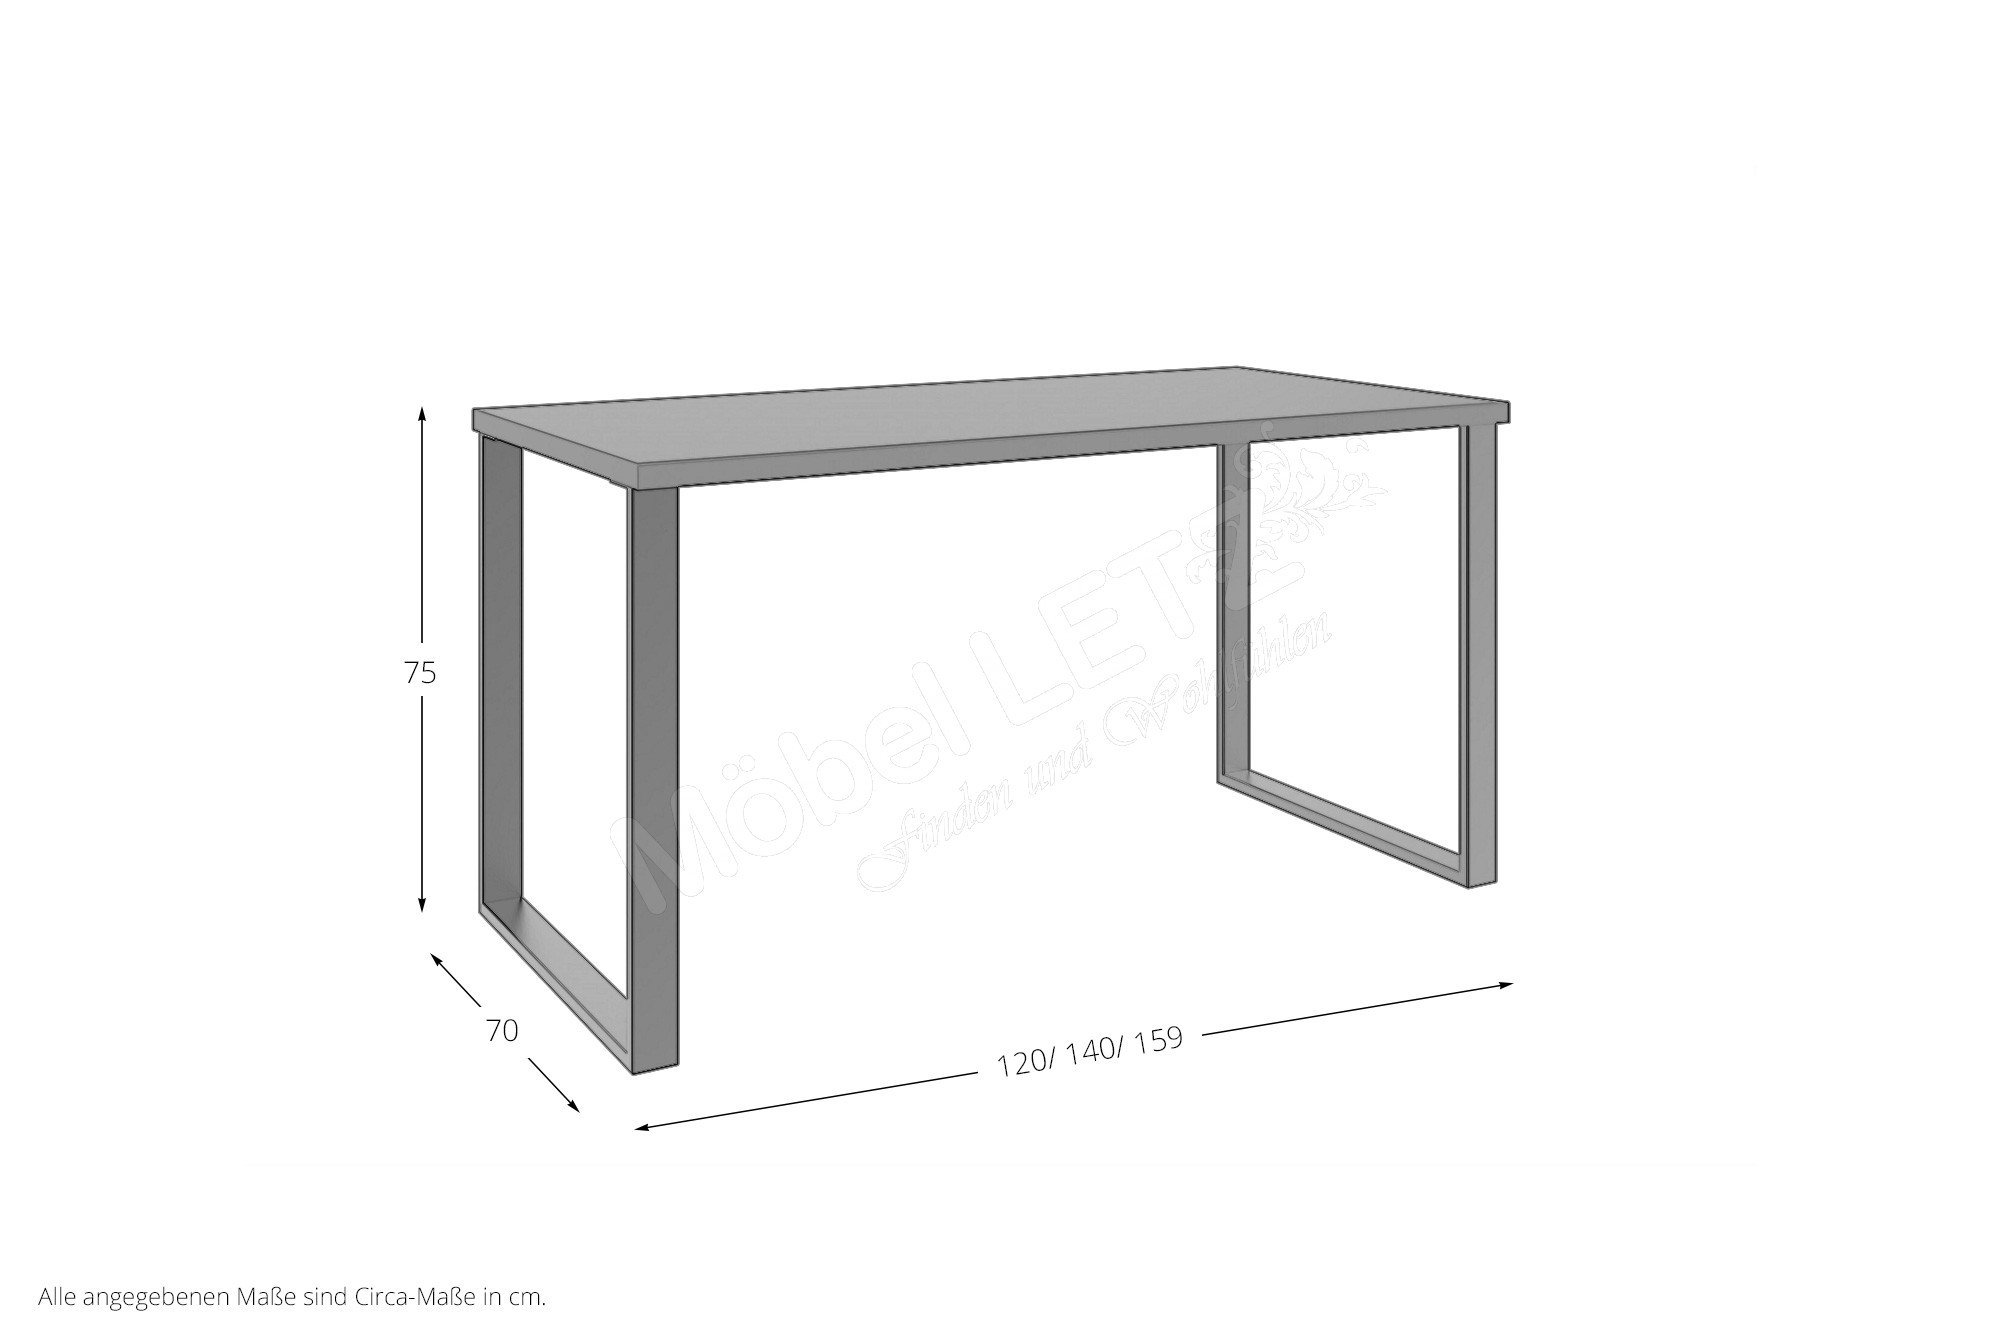 Home Desk Schreibtisch von Wimex | Möbel Letz - Ihr Online-Shop